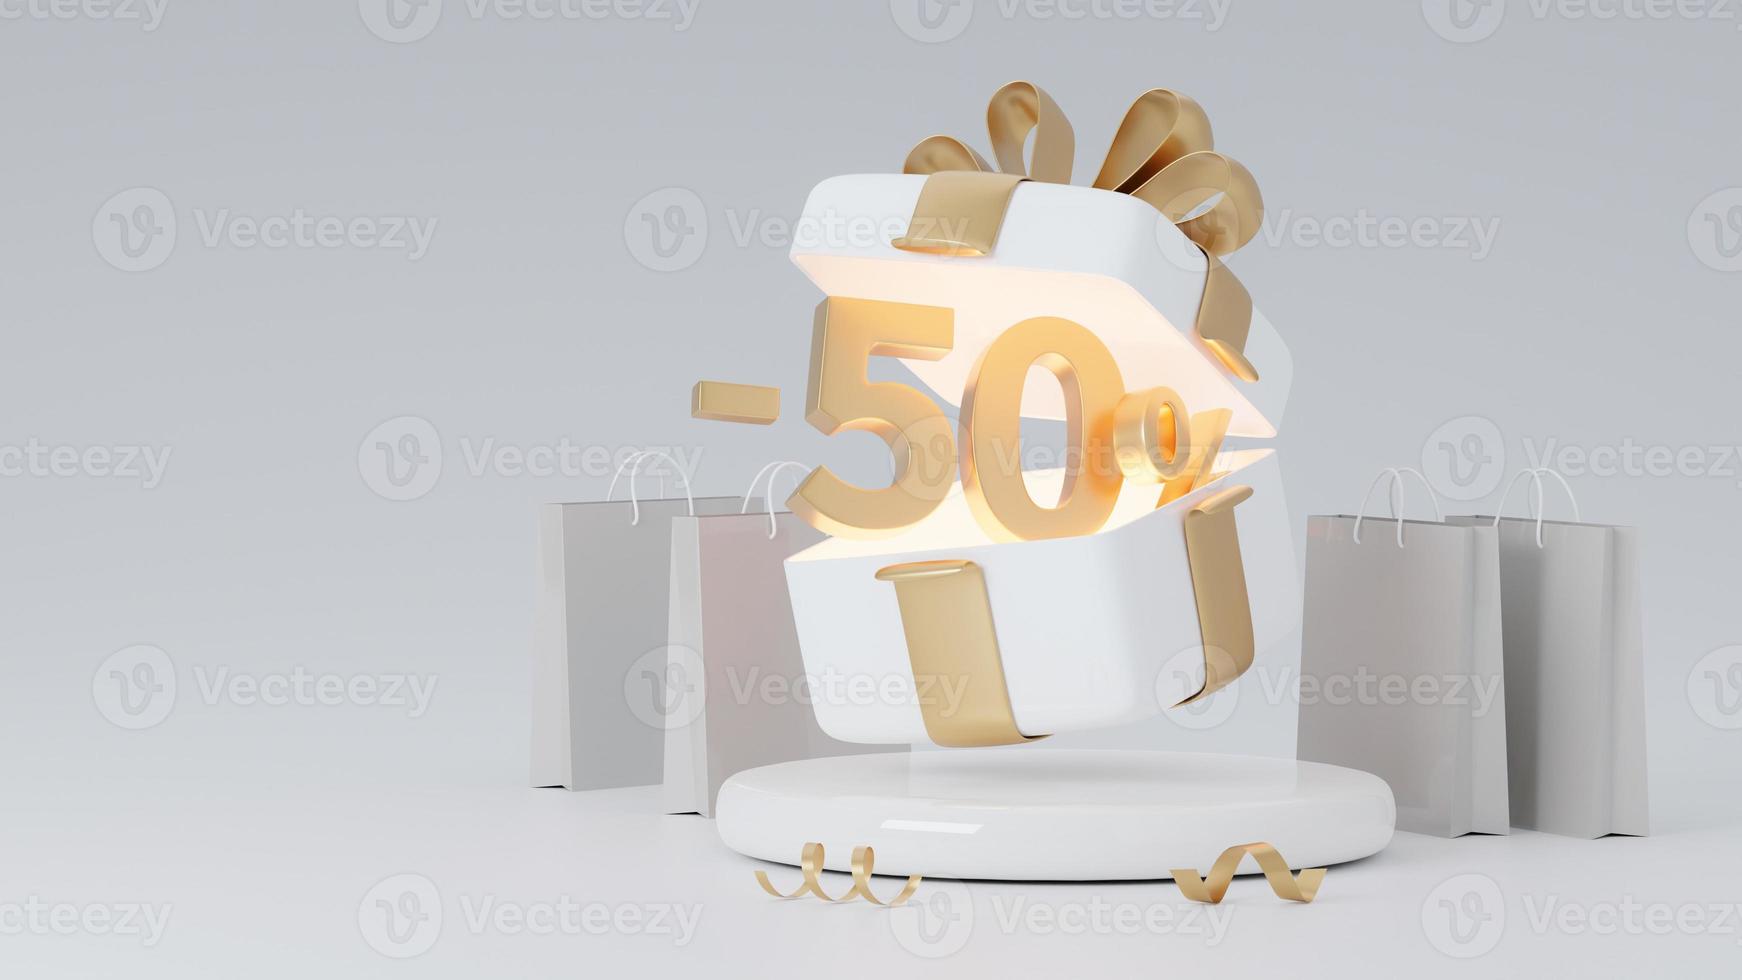 confezione regalo aperta con percentuale di sconto. confezione regalo bianca e fiocco dorato sul podio. concetto di regalo di sconto. rendering 3D foto